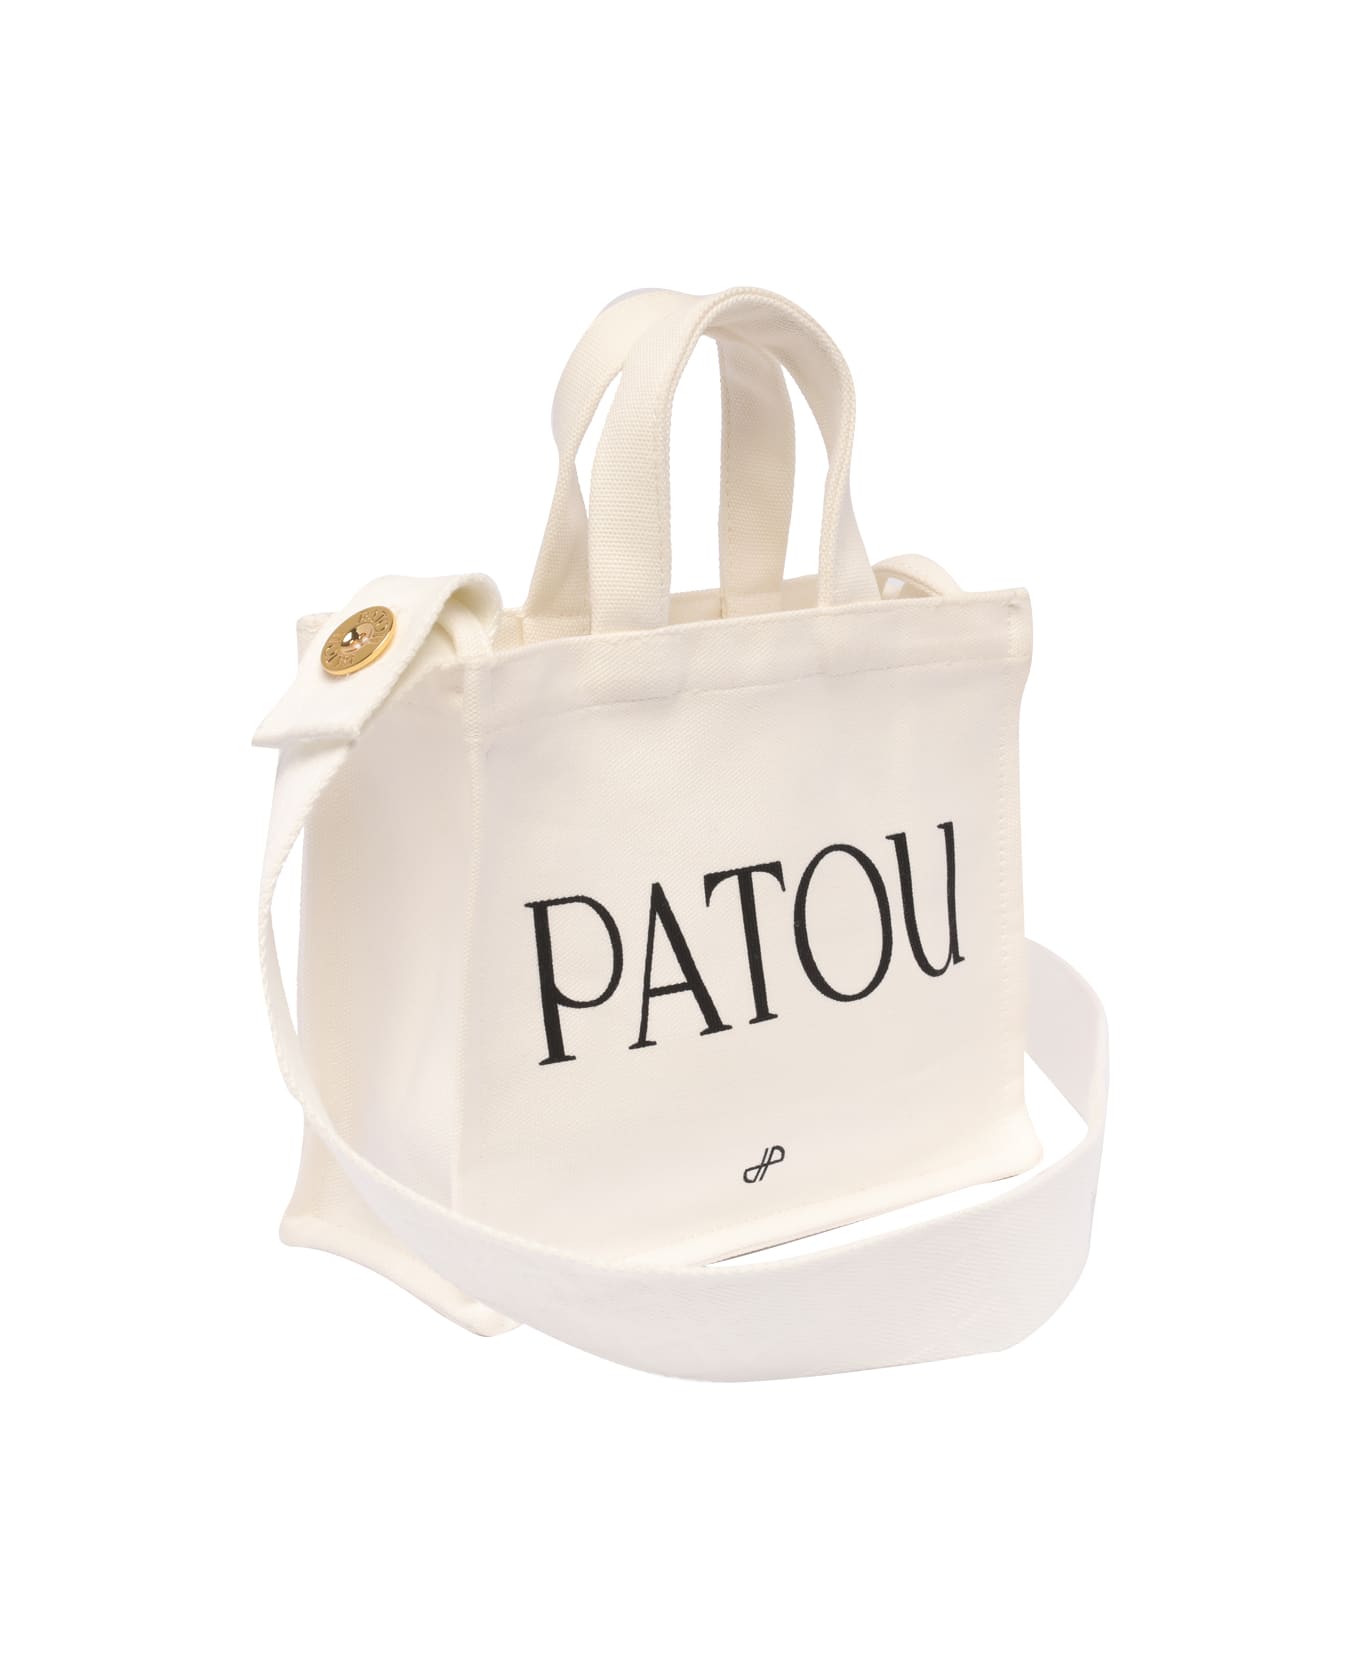 Patou Logo Tote Bag - White トートバッグ